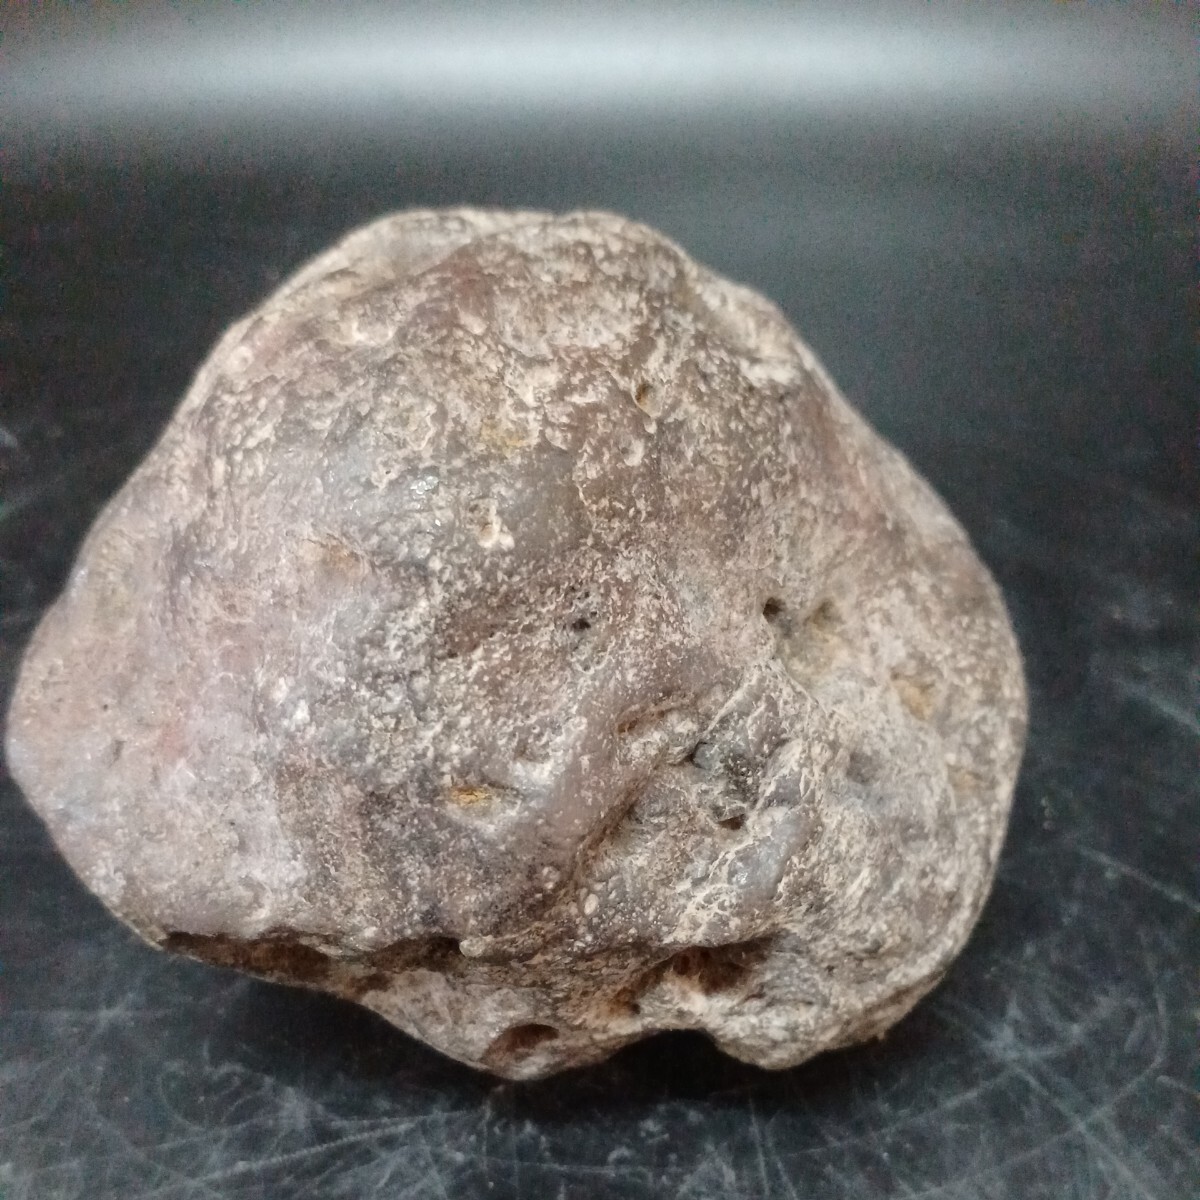 041908 マダカマスカル 鉄隕石 13cm 1292gの画像3